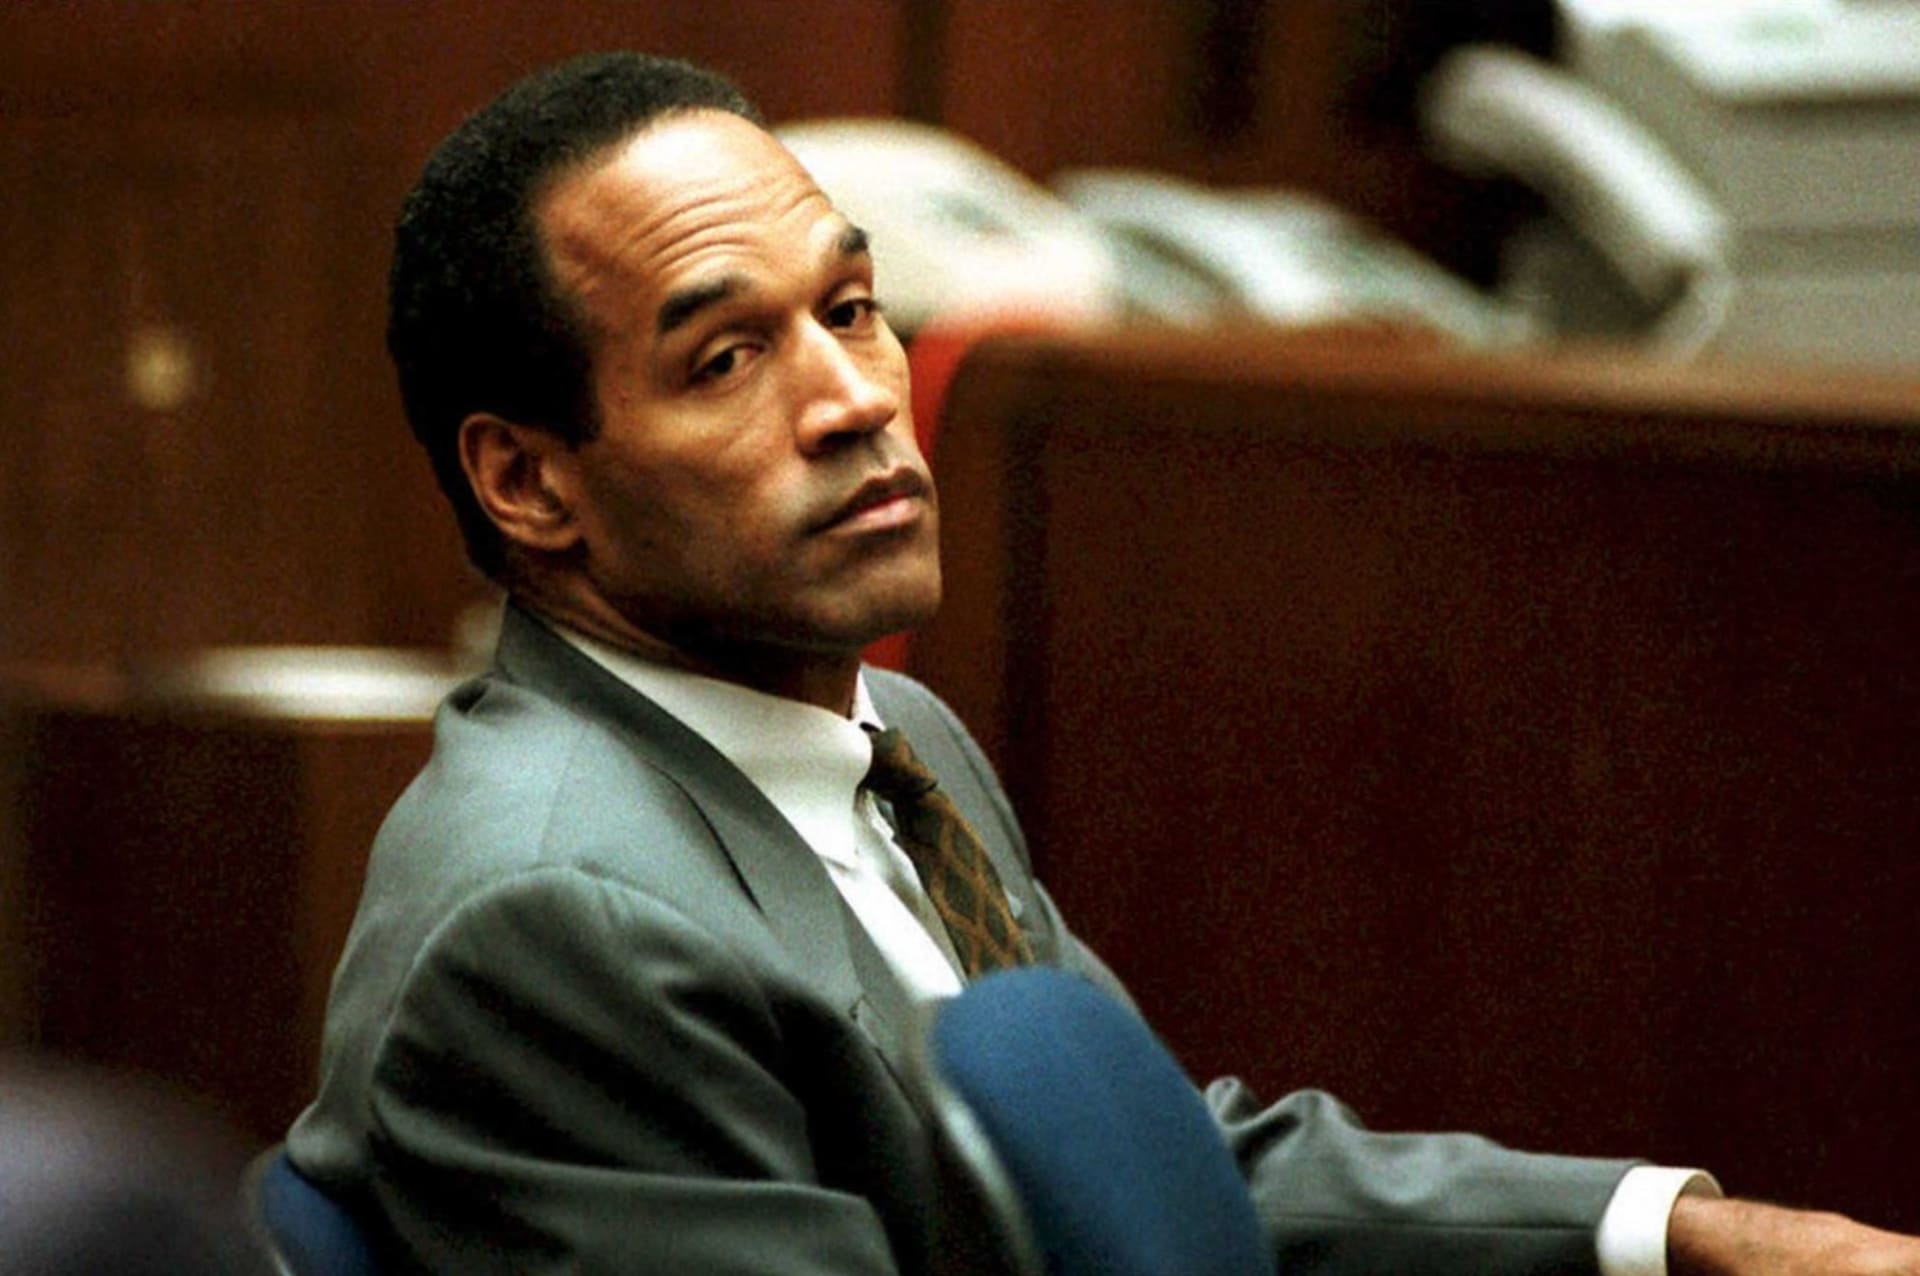 O. J. Simpson během tzv. procesu století v roce 1994, ve kterém čelil obžalobě z dvojnásobné vraždy.